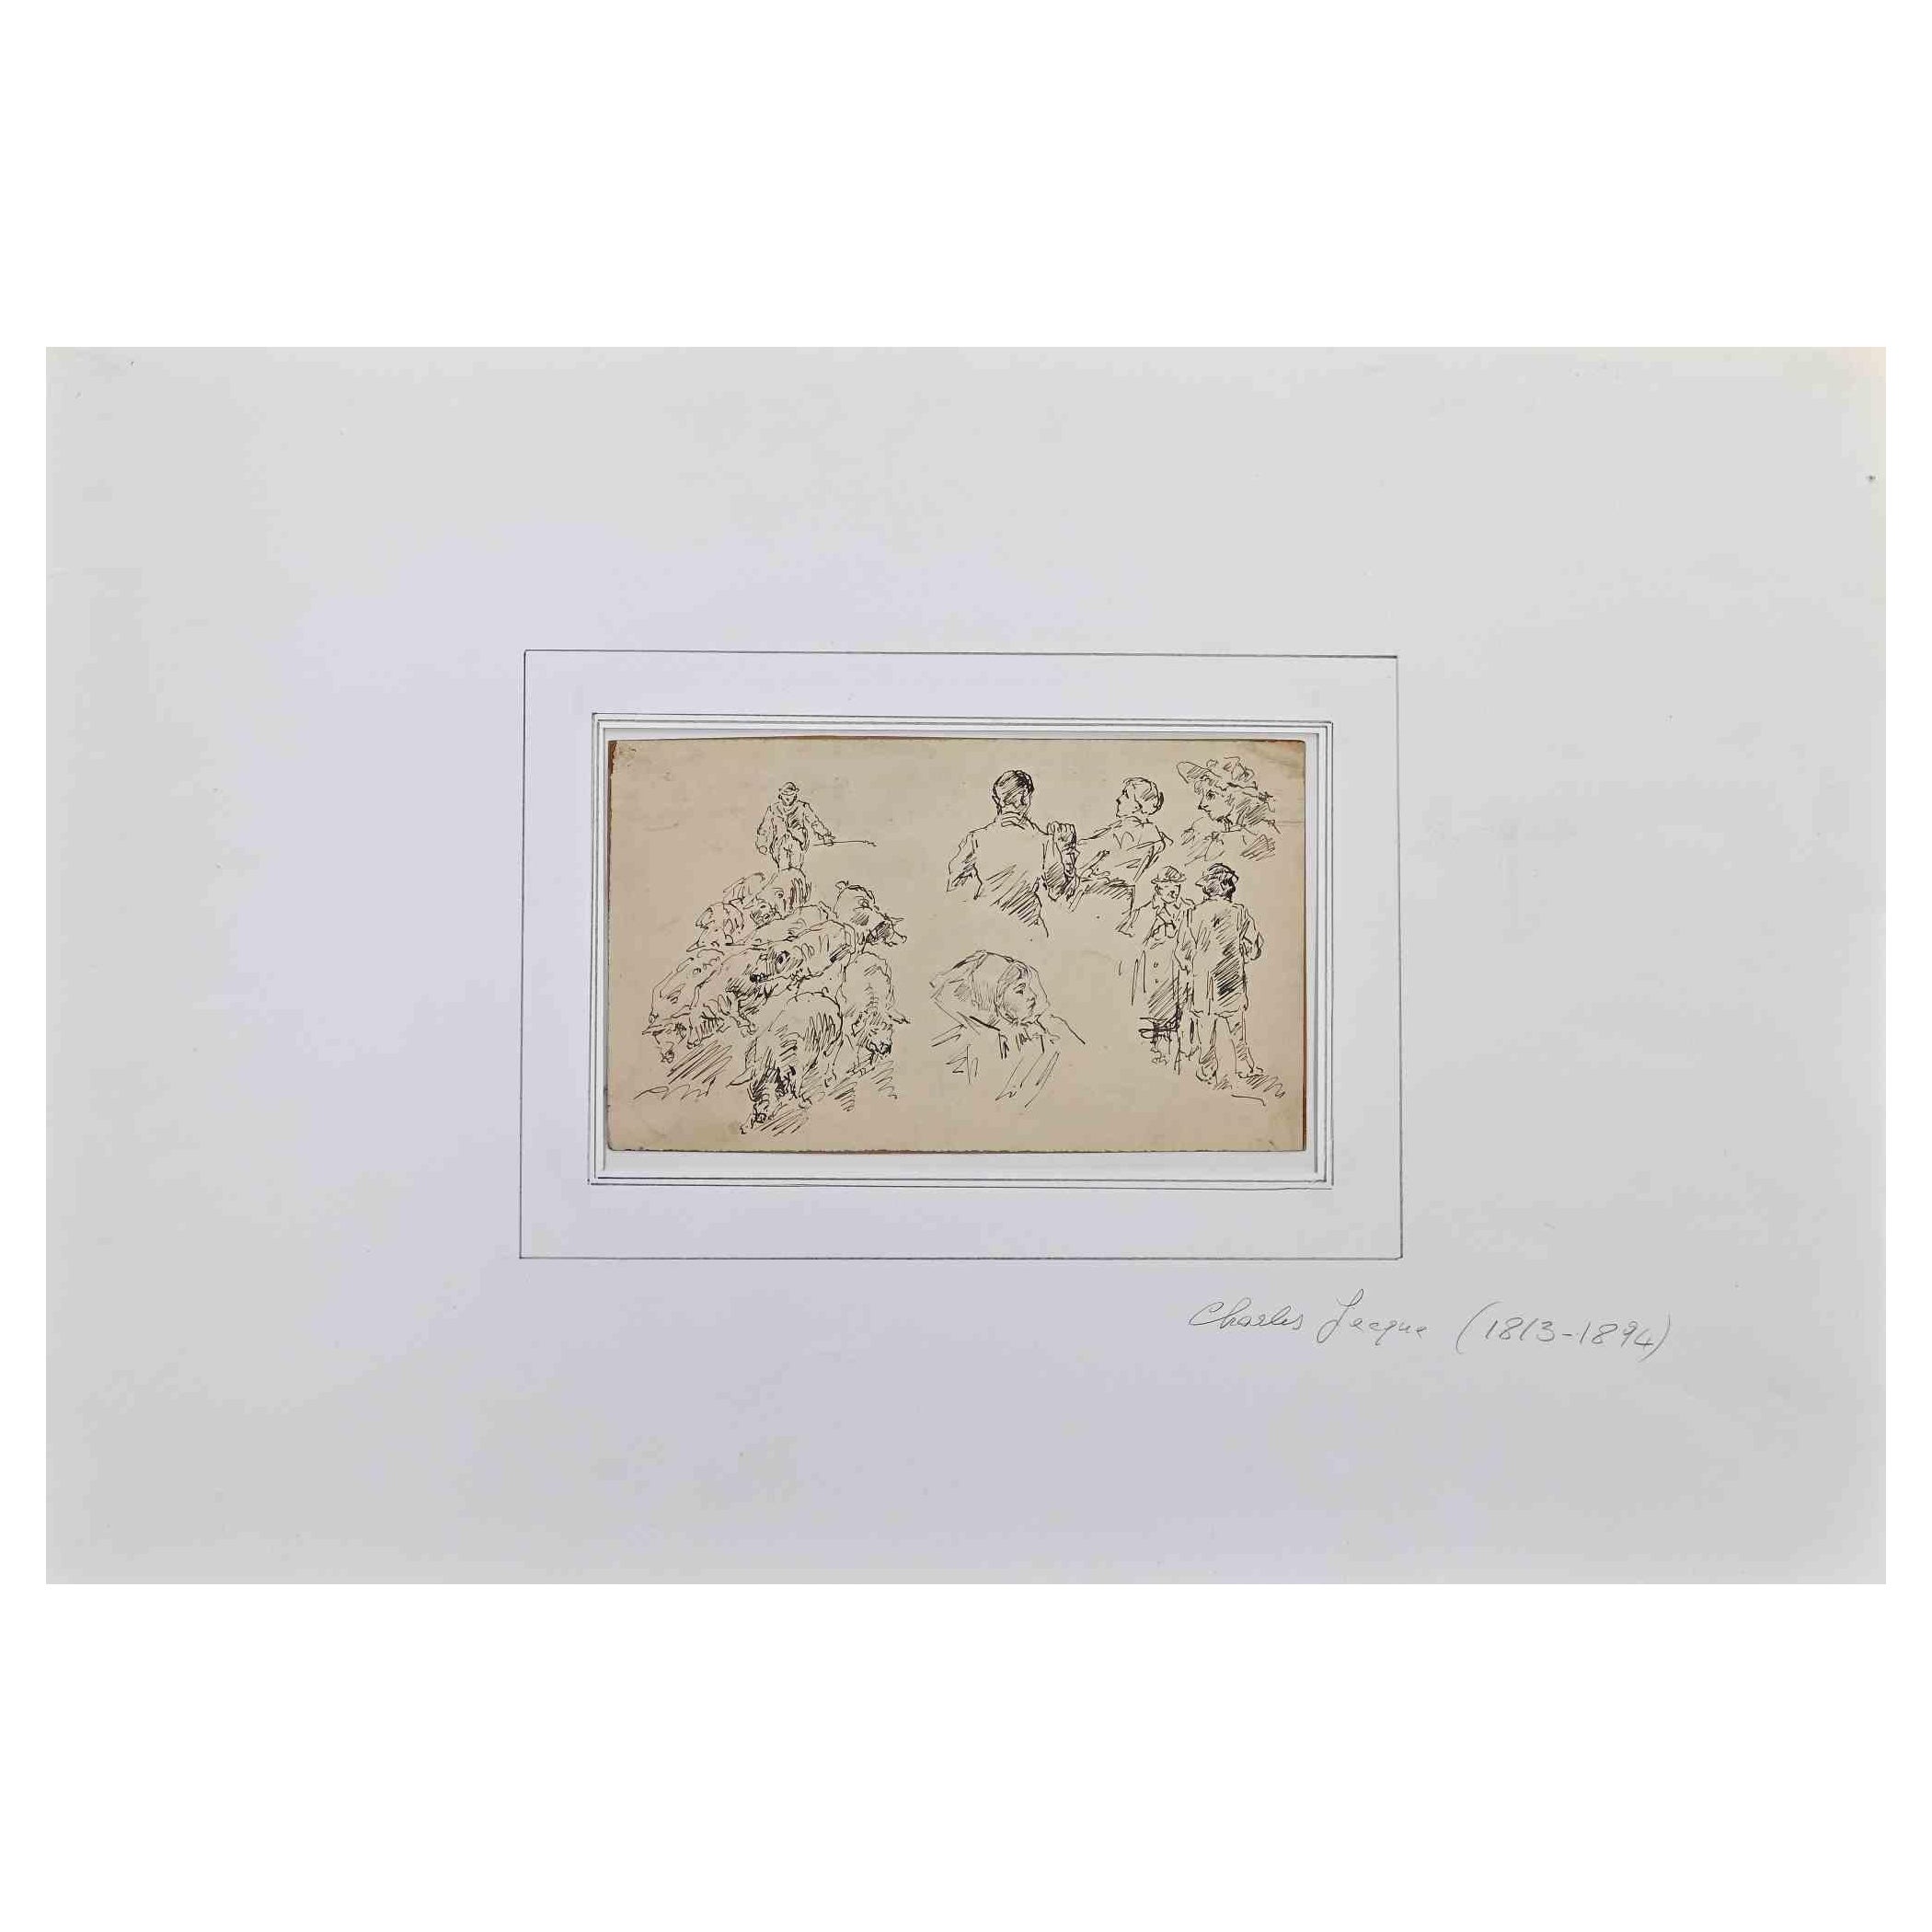  Figures - dessin original sur papier de Charles Jacque - milieu du 19e siècle